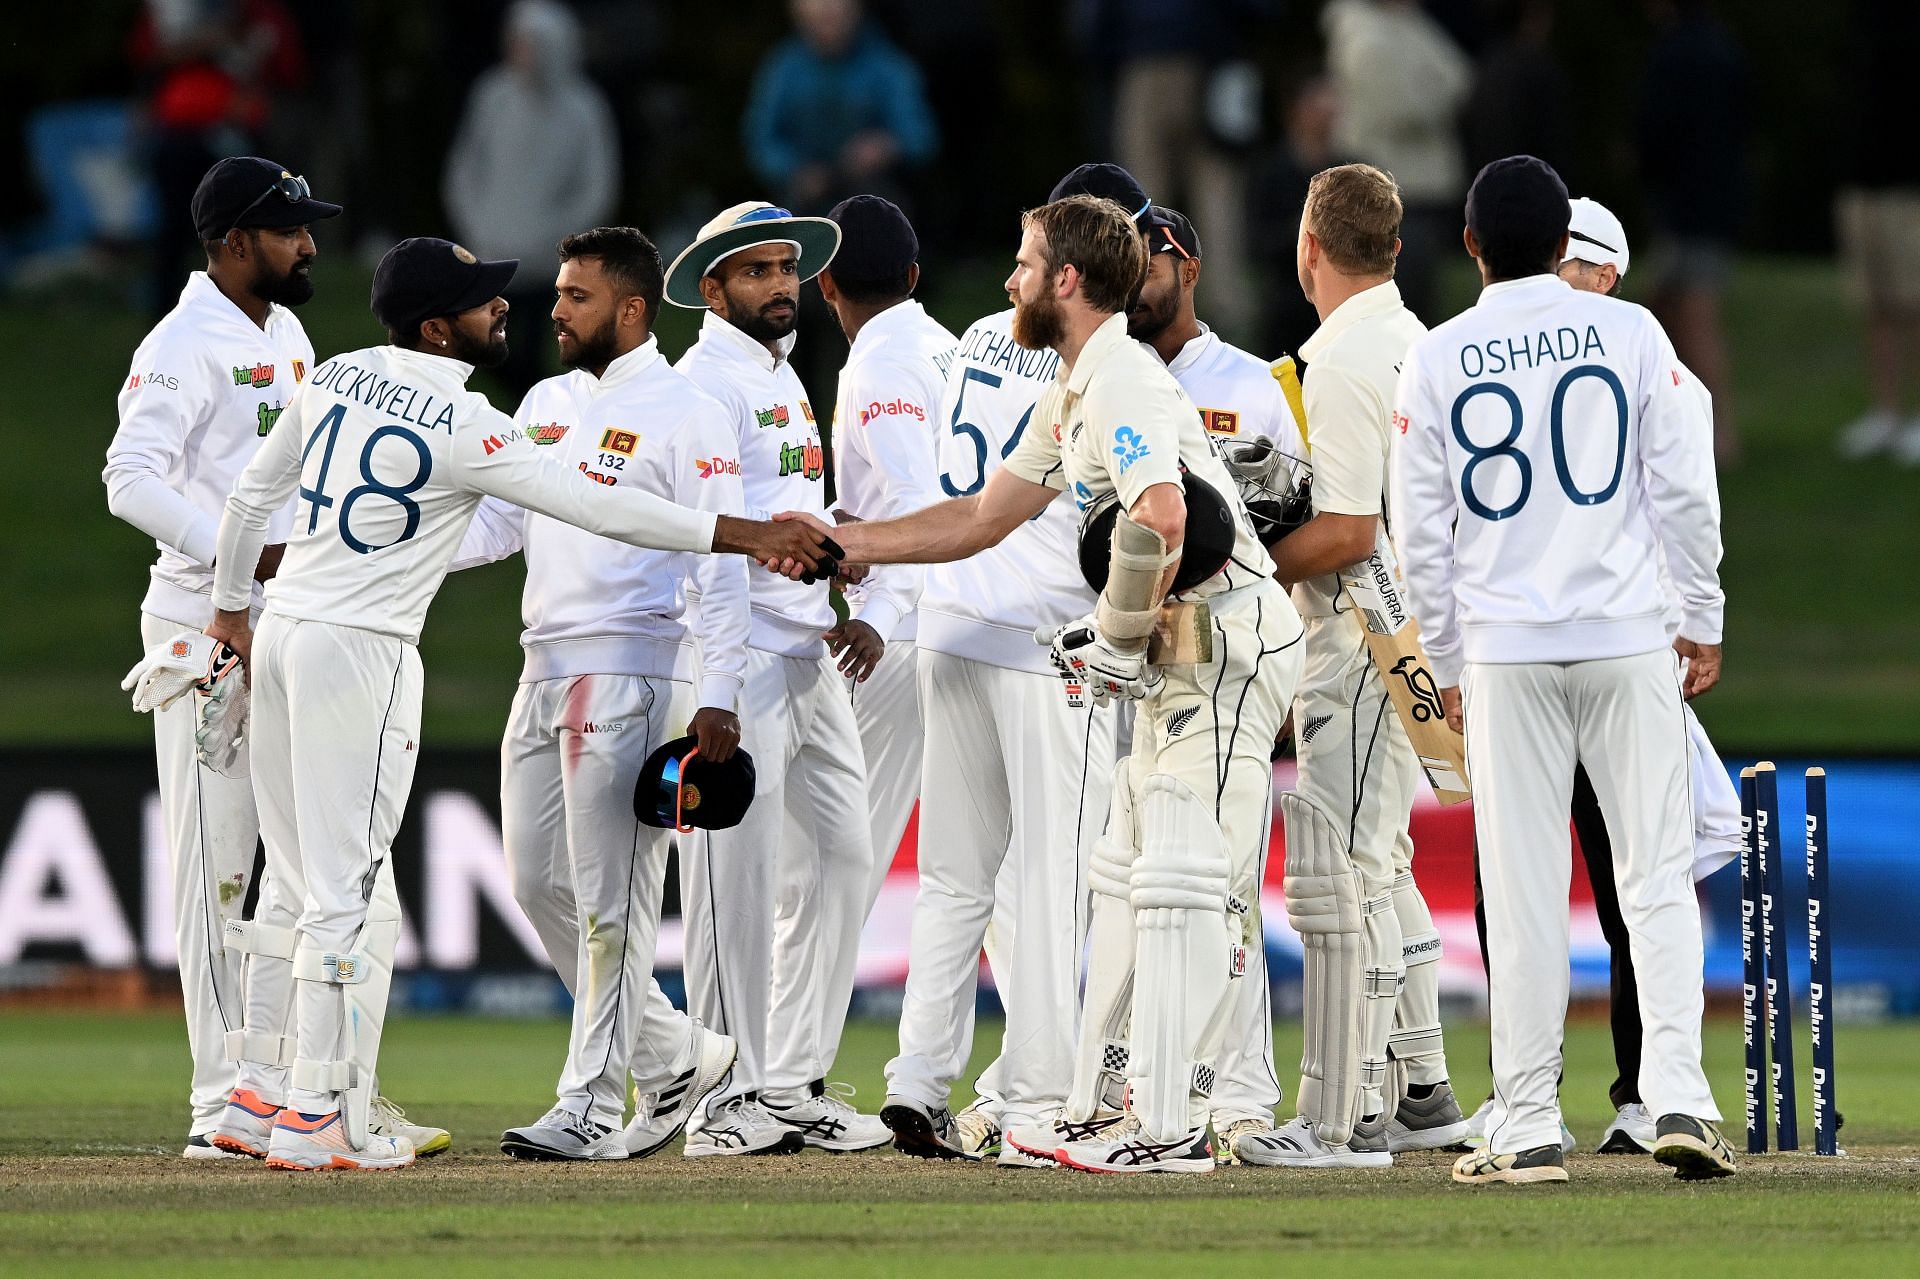 New Zealand v Sri Lanka - 1st Test: Day 5